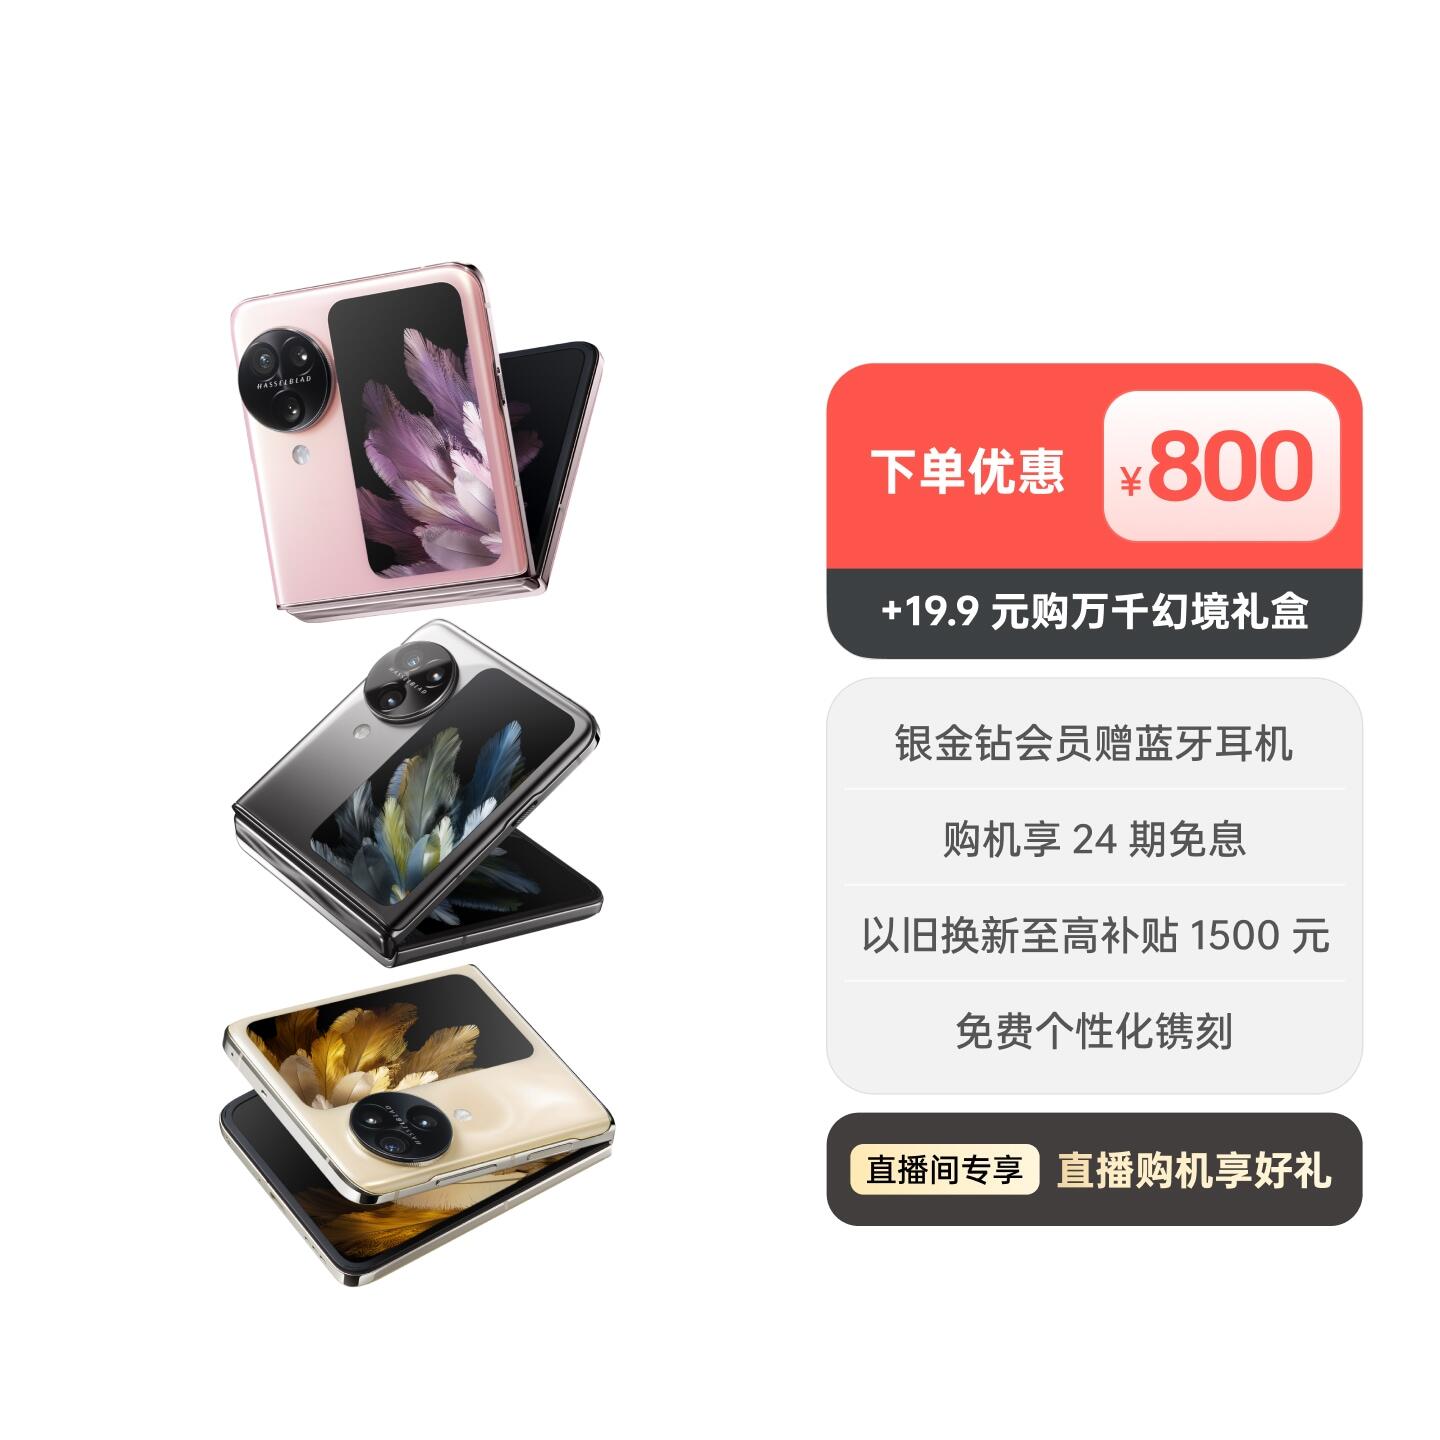 OPPO Find N3 Flip AI手机 月光缪斯 12GB+256GB +19.9 元购「万千幻境」礼盒